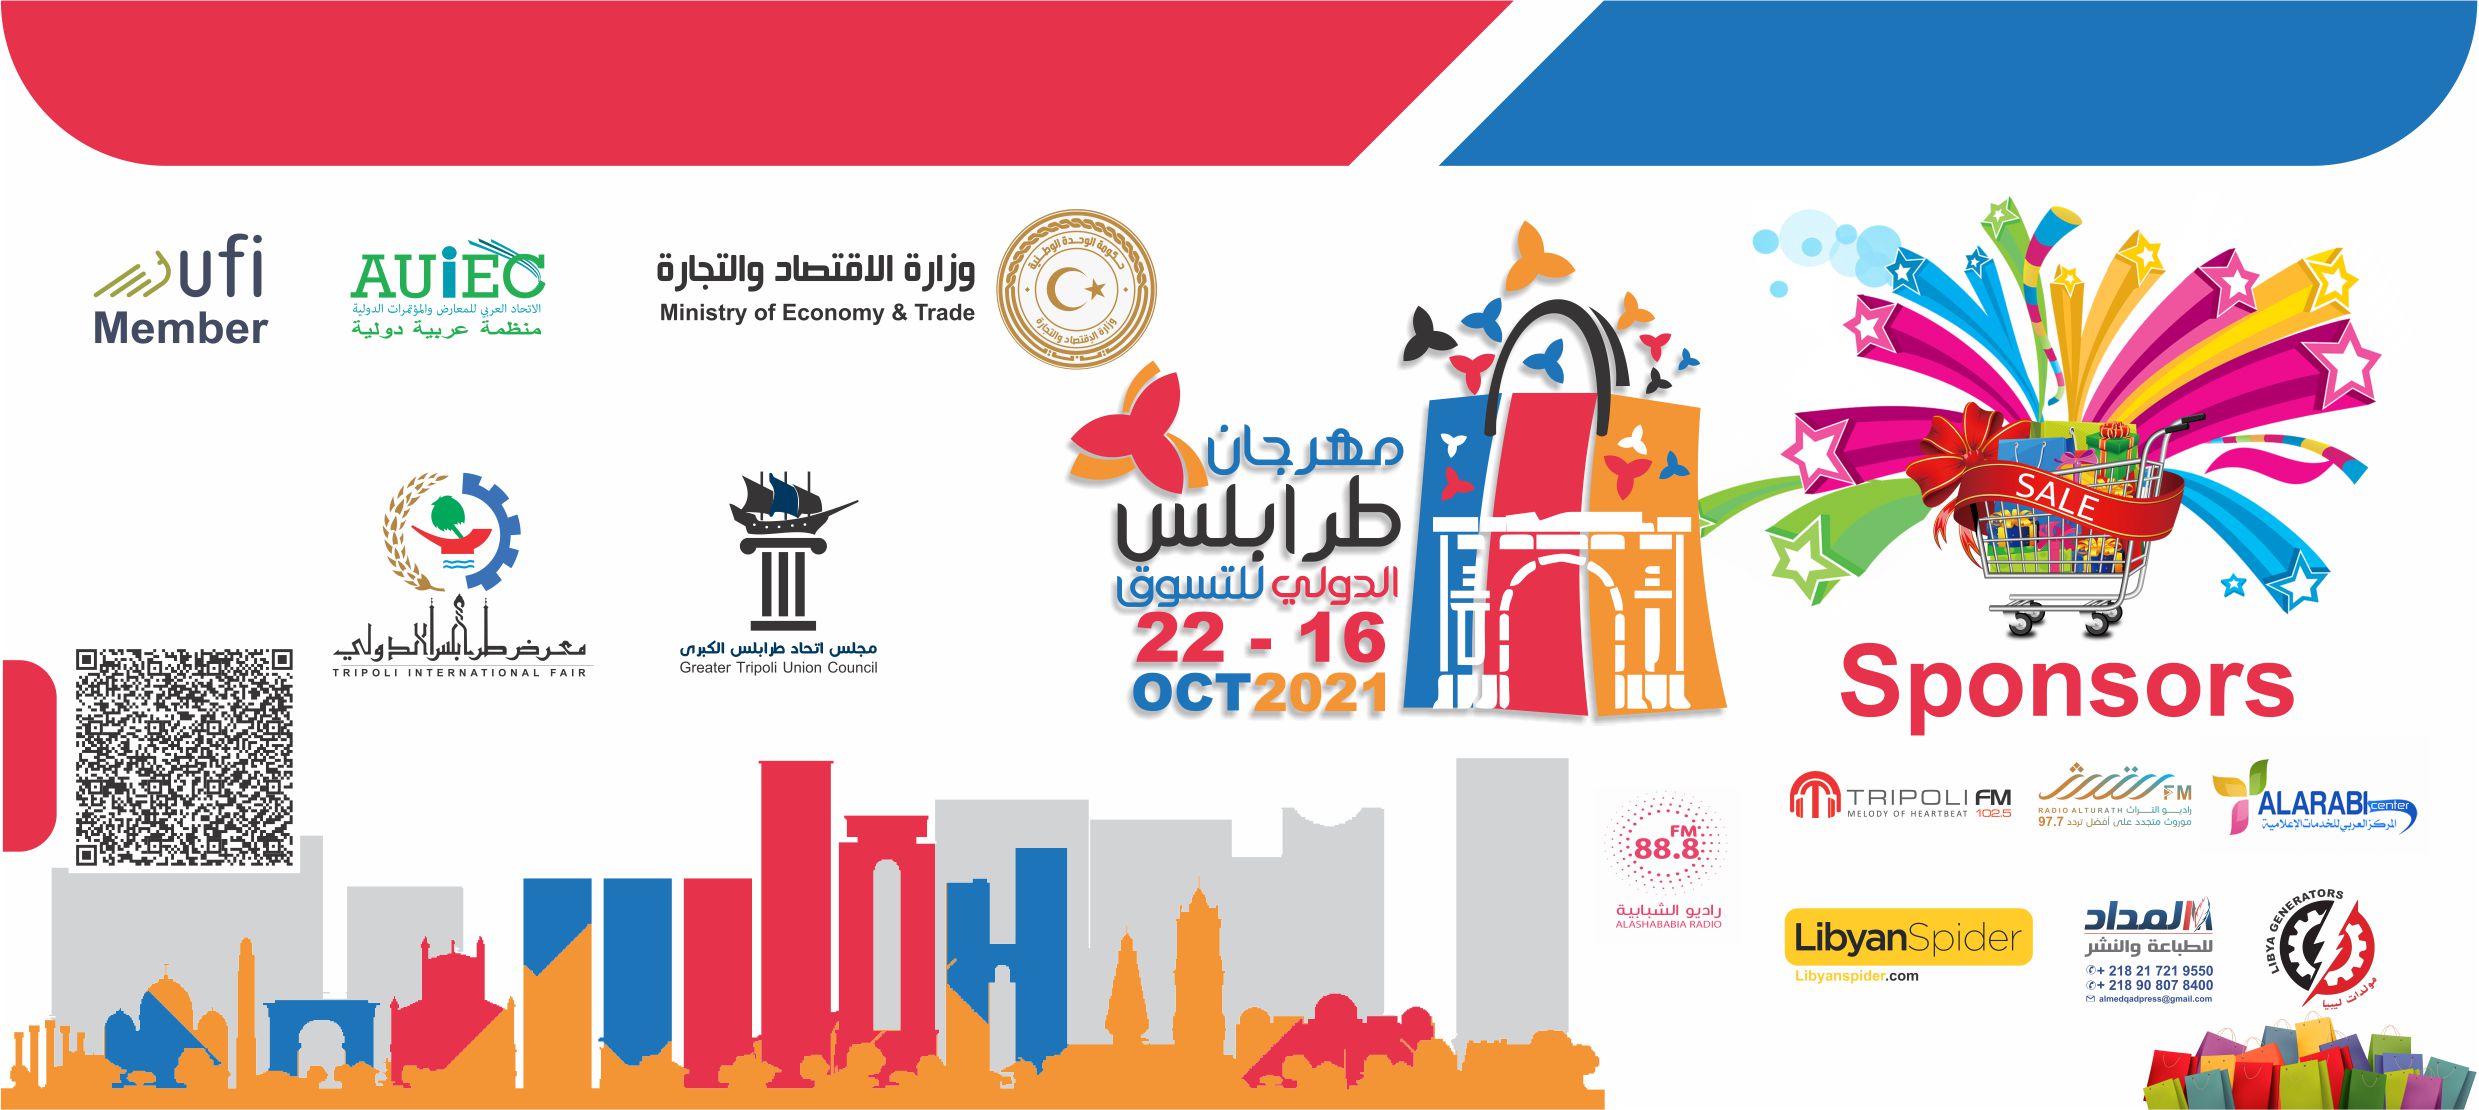 منتسبي الغرفة مدعوون للمشاركة في فعاليات مهرجان طرابلس الدولي للتسوق